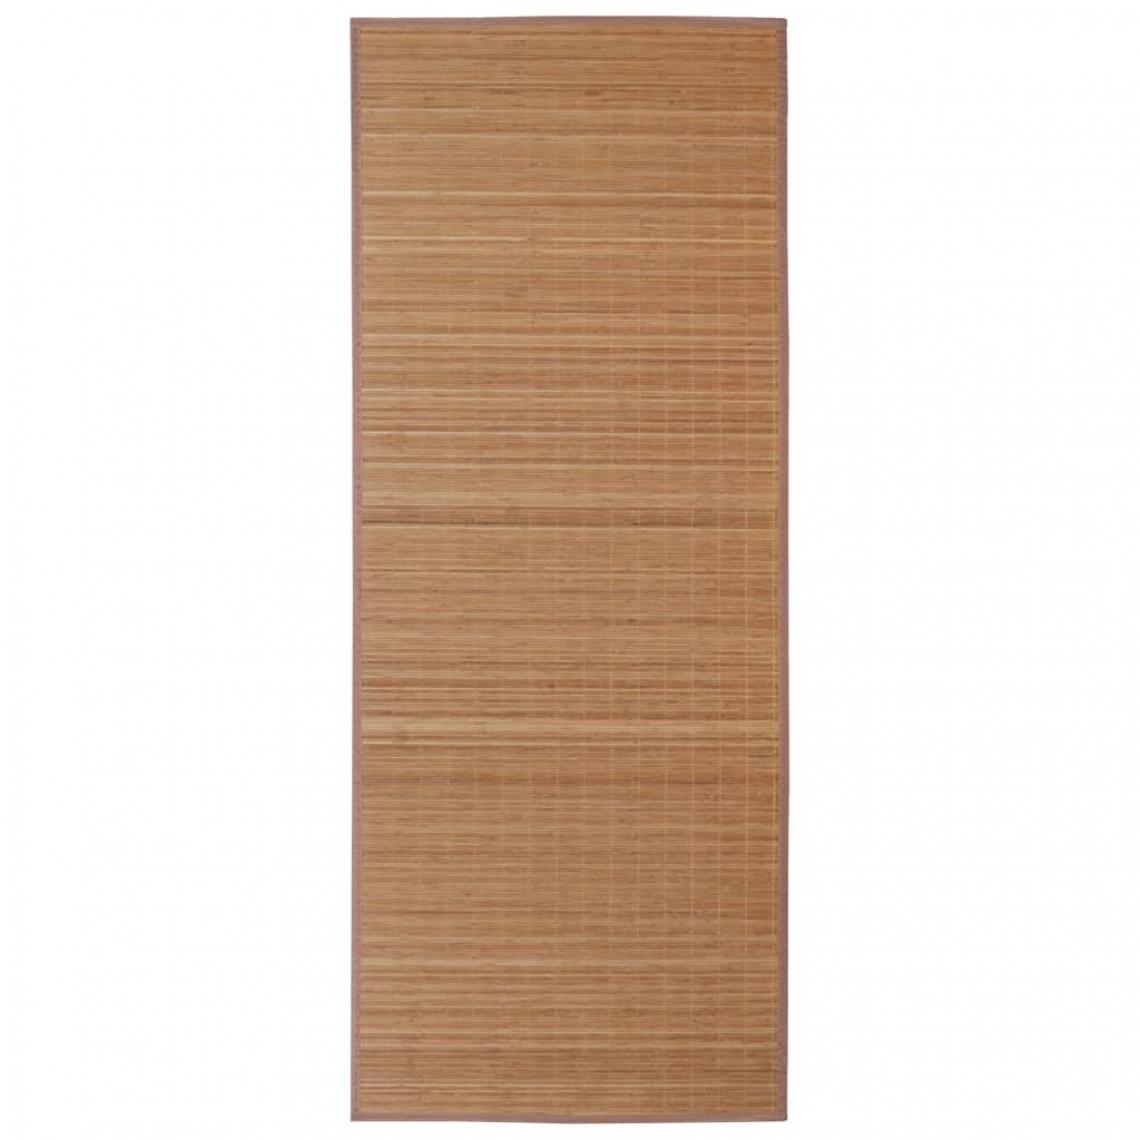 Decoshop26 - Tapis rectangulaire Marron Bambou 150 x 200 cm DEC023834 - Tapis